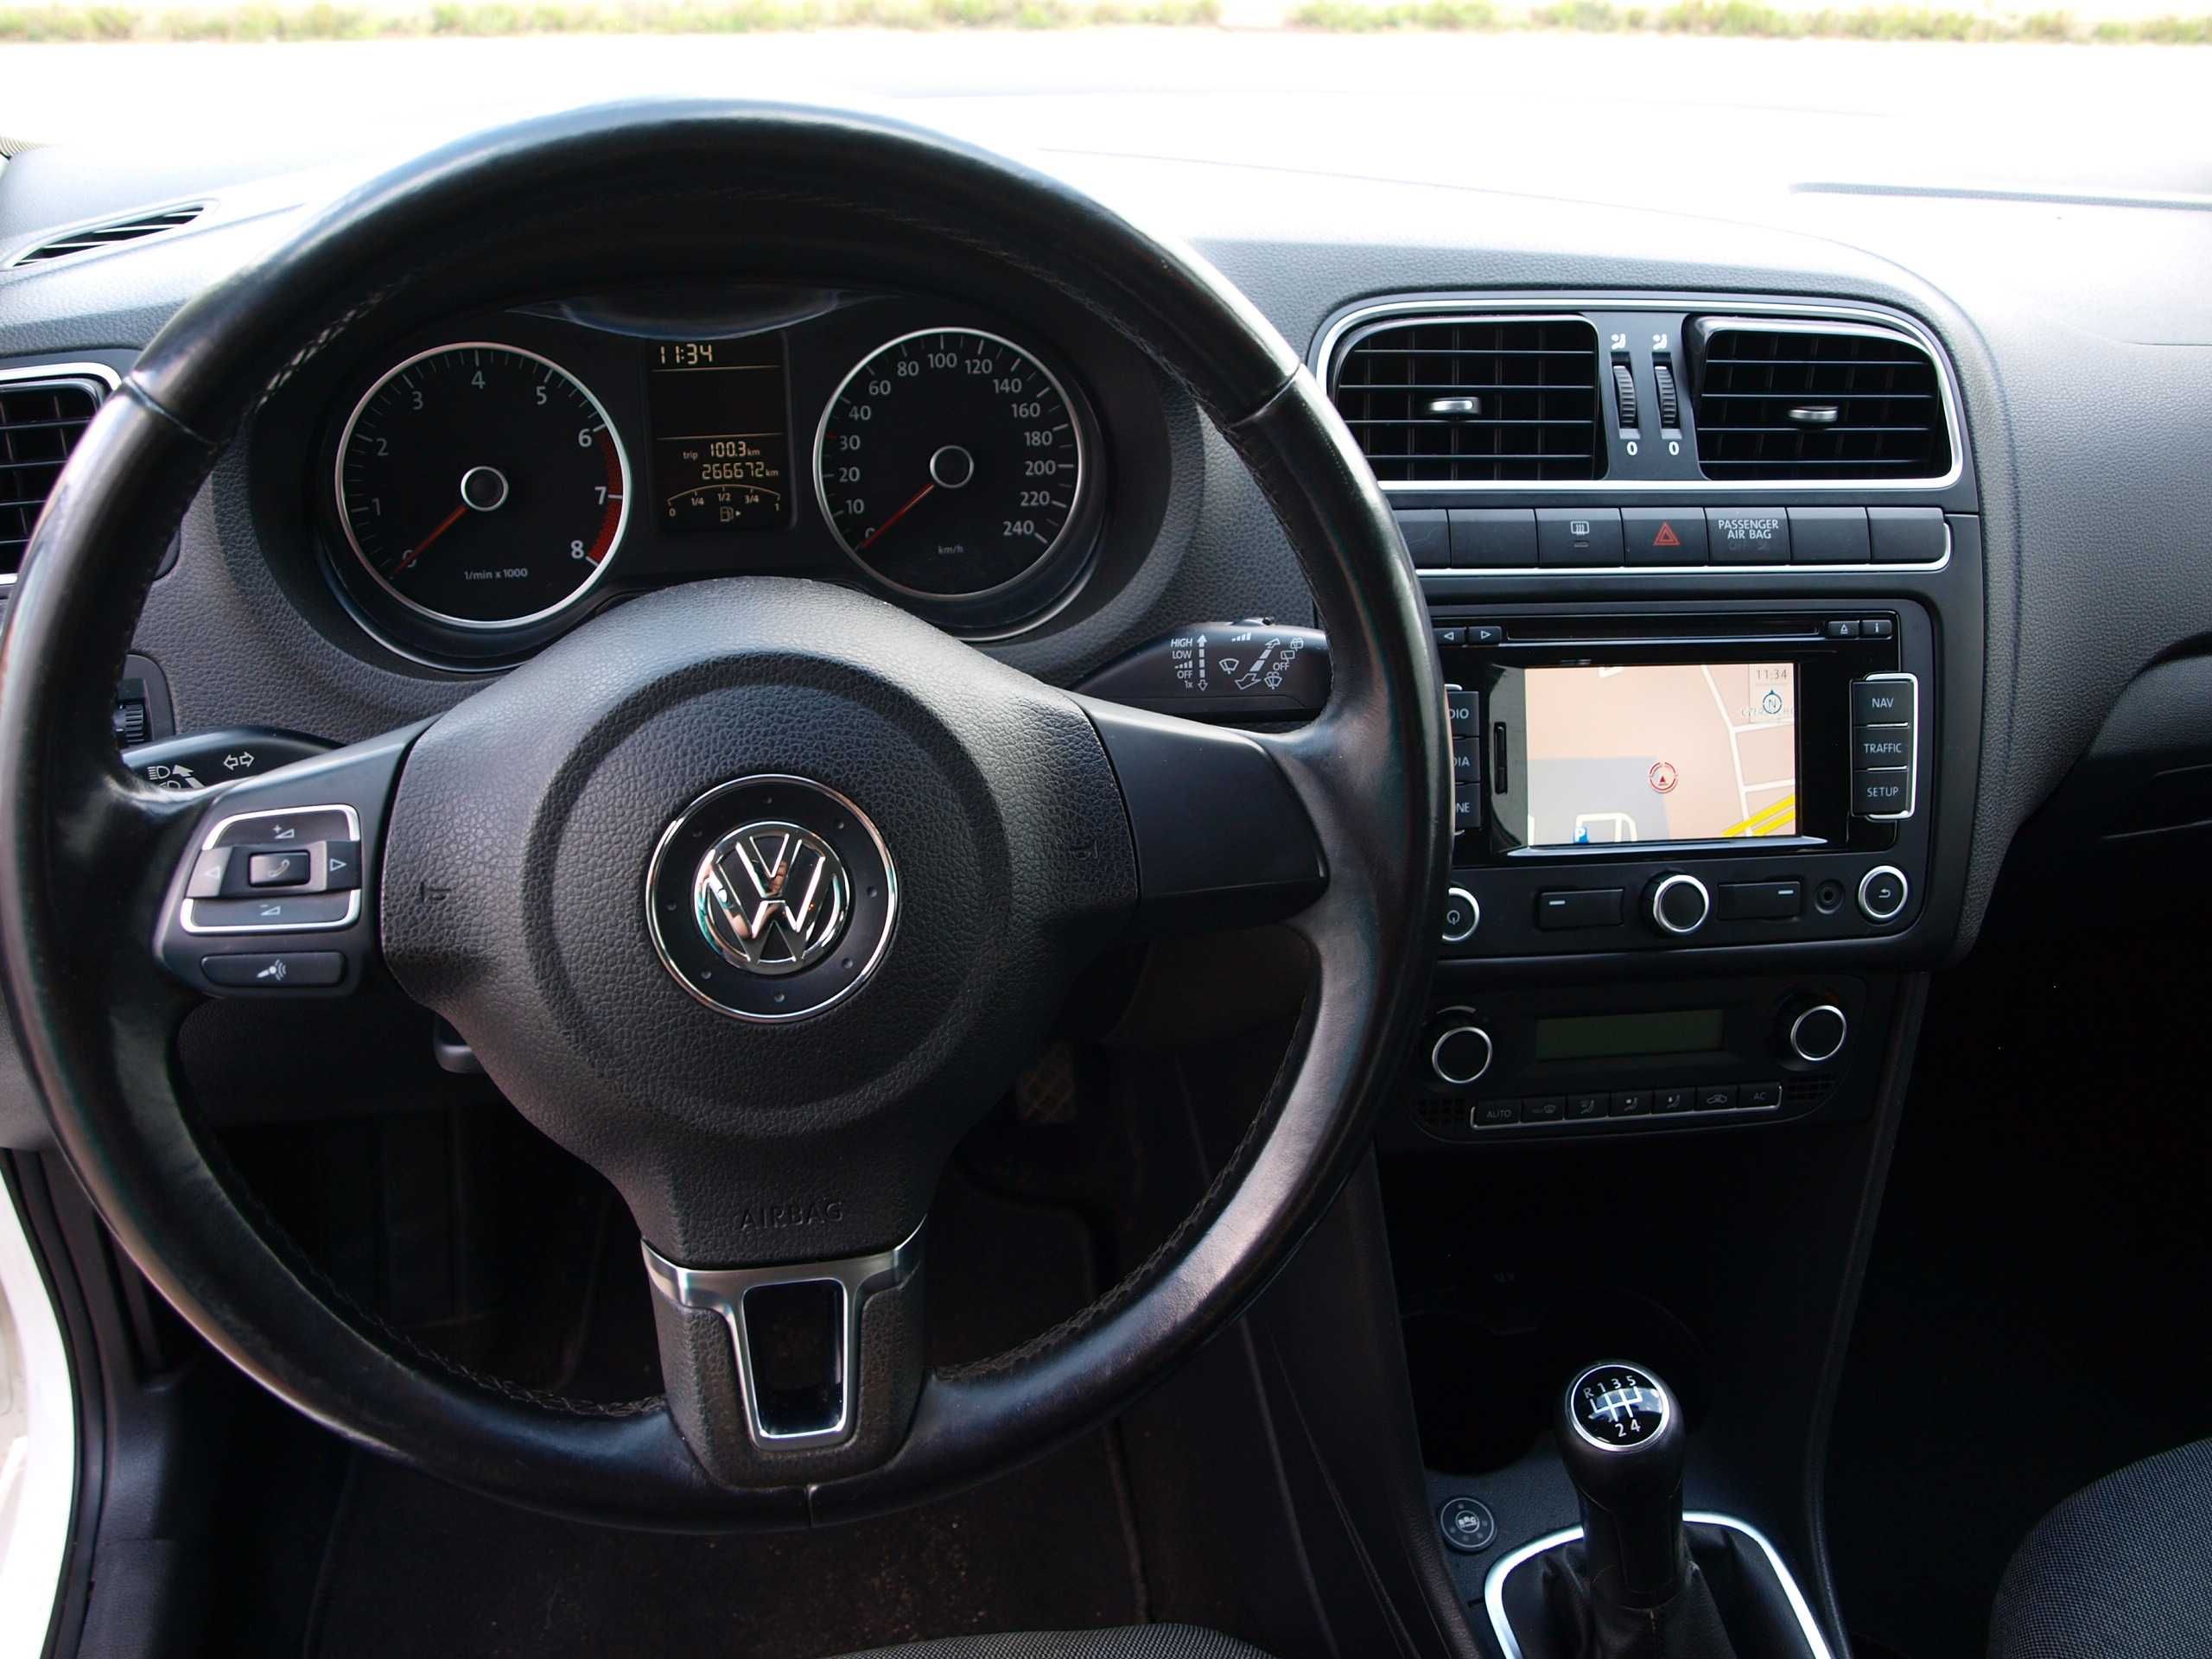 Wypożyczalnia Aut Wynajem Samochodów VW Polo 1.4B+LPG Bardzo Ekonomicz